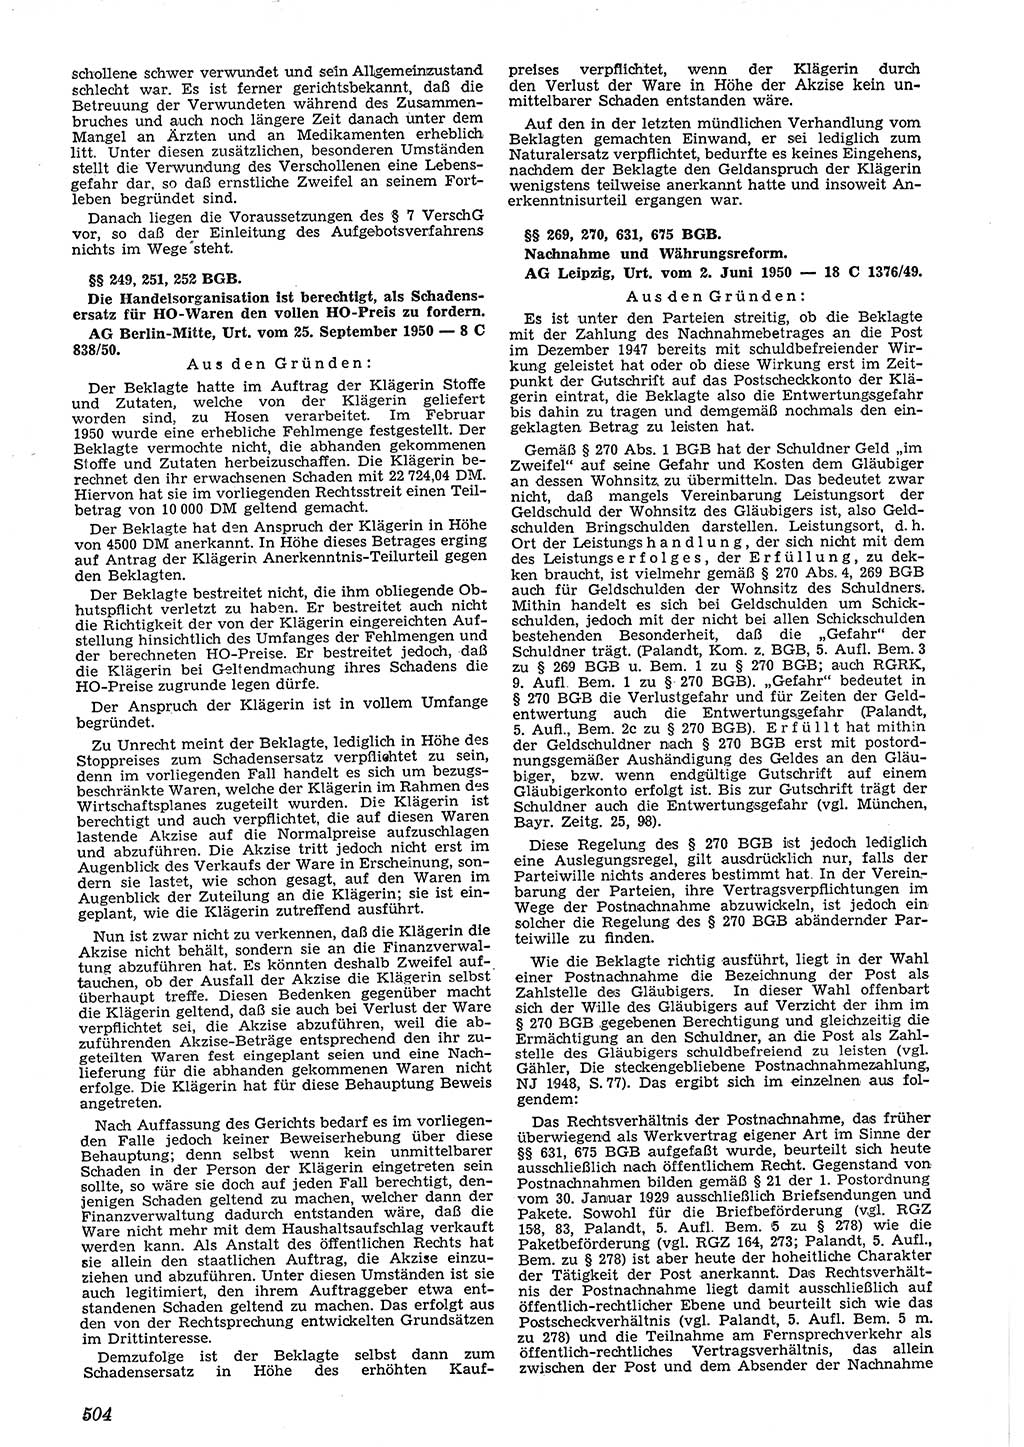 Neue Justiz (NJ), Zeitschrift für Recht und Rechtswissenschaft [Deutsche Demokratische Republik (DDR)], 4. Jahrgang 1950, Seite 504 (NJ DDR 1950, S. 504)